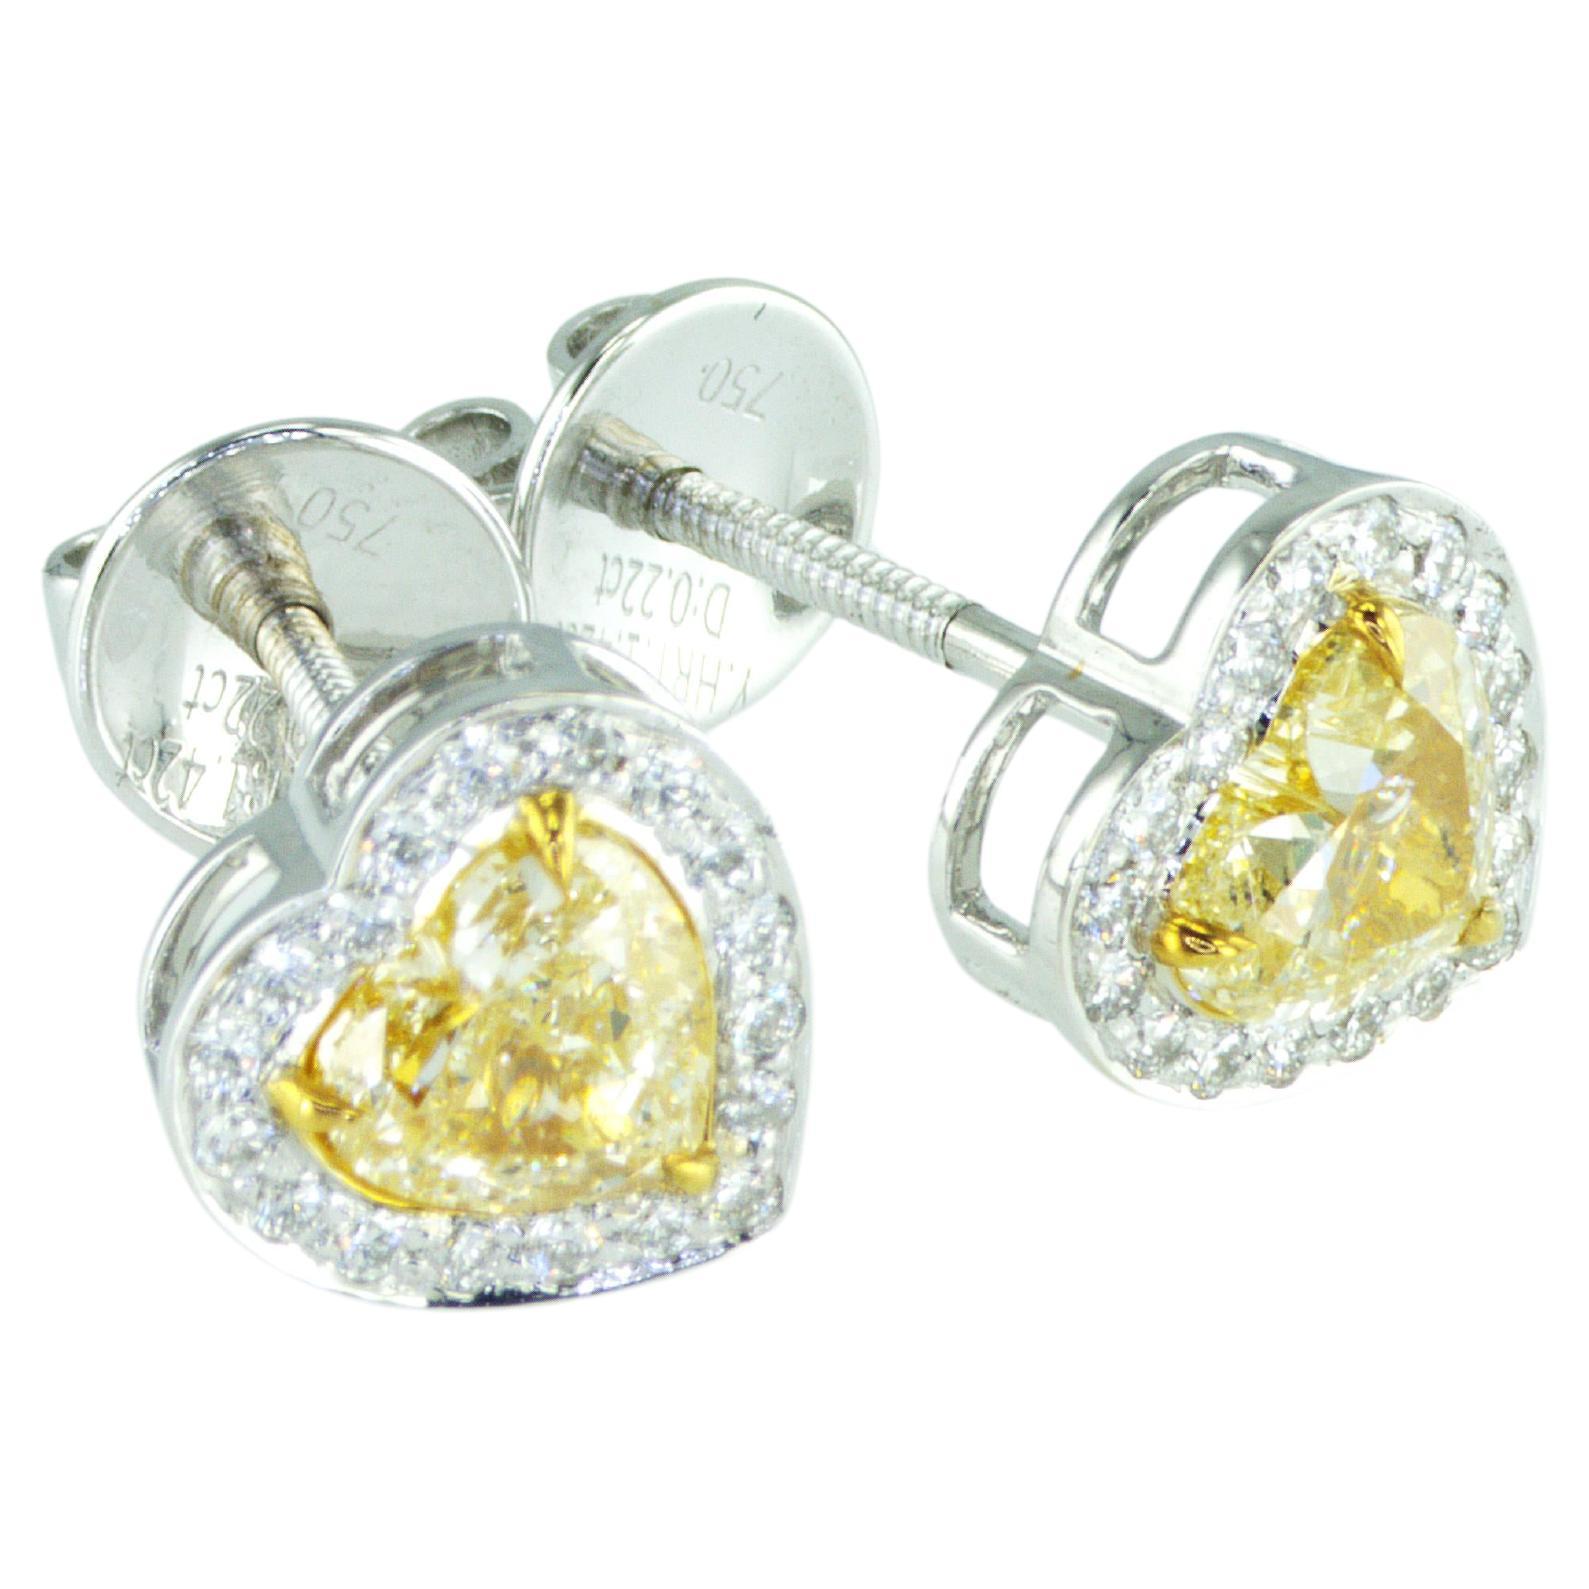 IDL certified 1.66 carat Fancy Yellow Heart shape natural diamonds Earrings For Sale